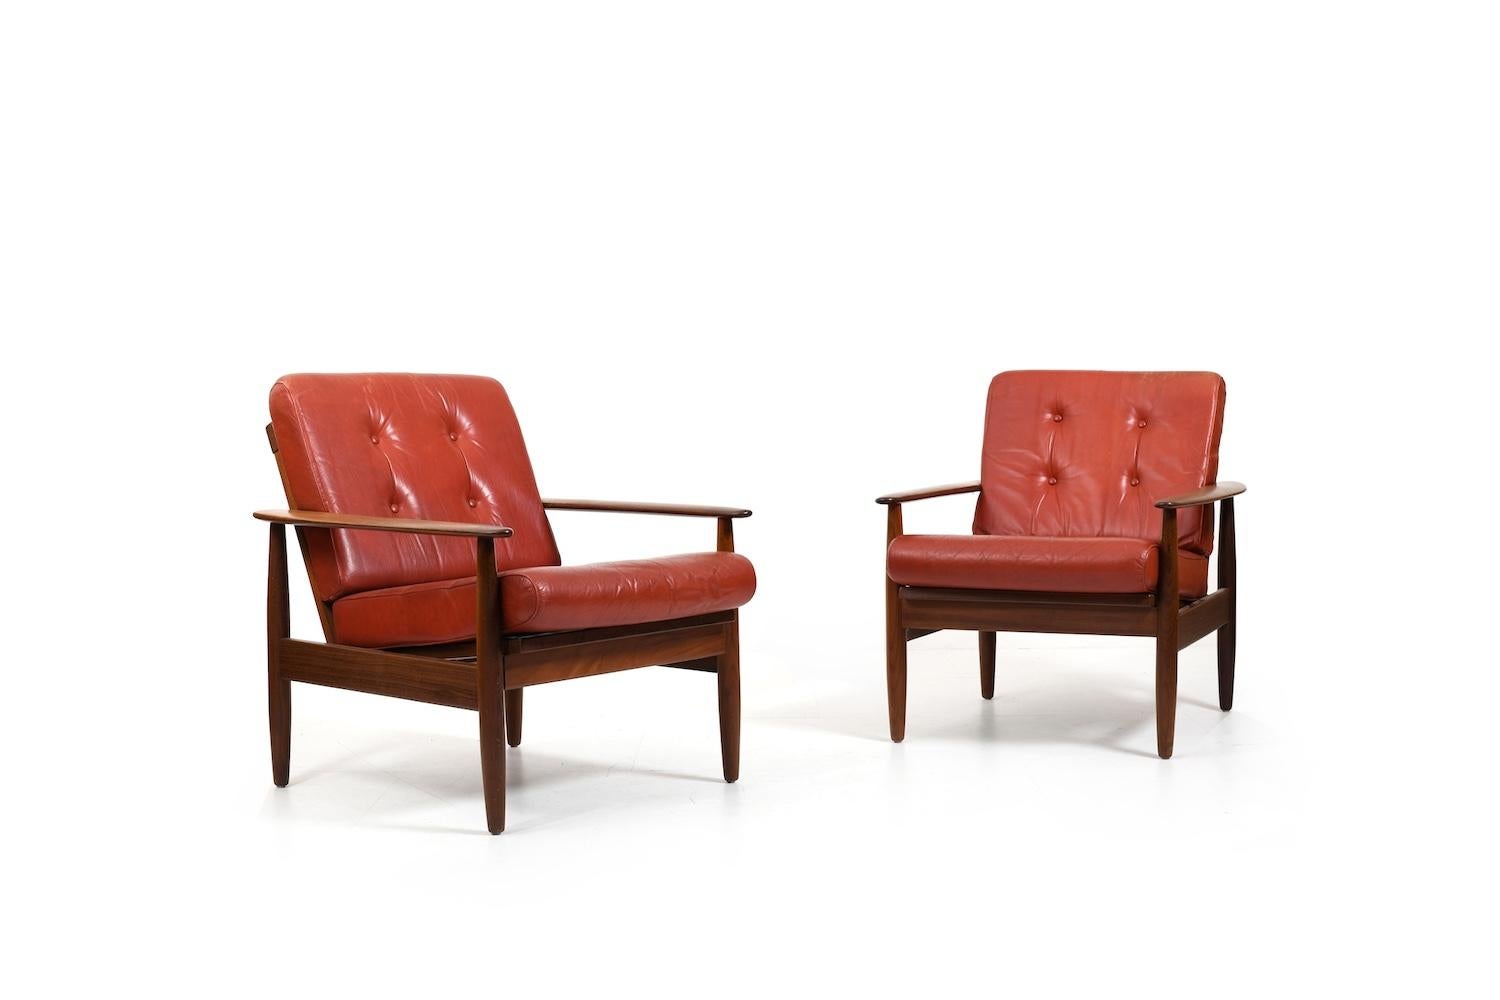 Paire de fauteuils scandinaves en teck et coussins d'origine en cuir rouge indien. Très bon état vintage, prêt à l'emploi. Prix pour l'ensemble.